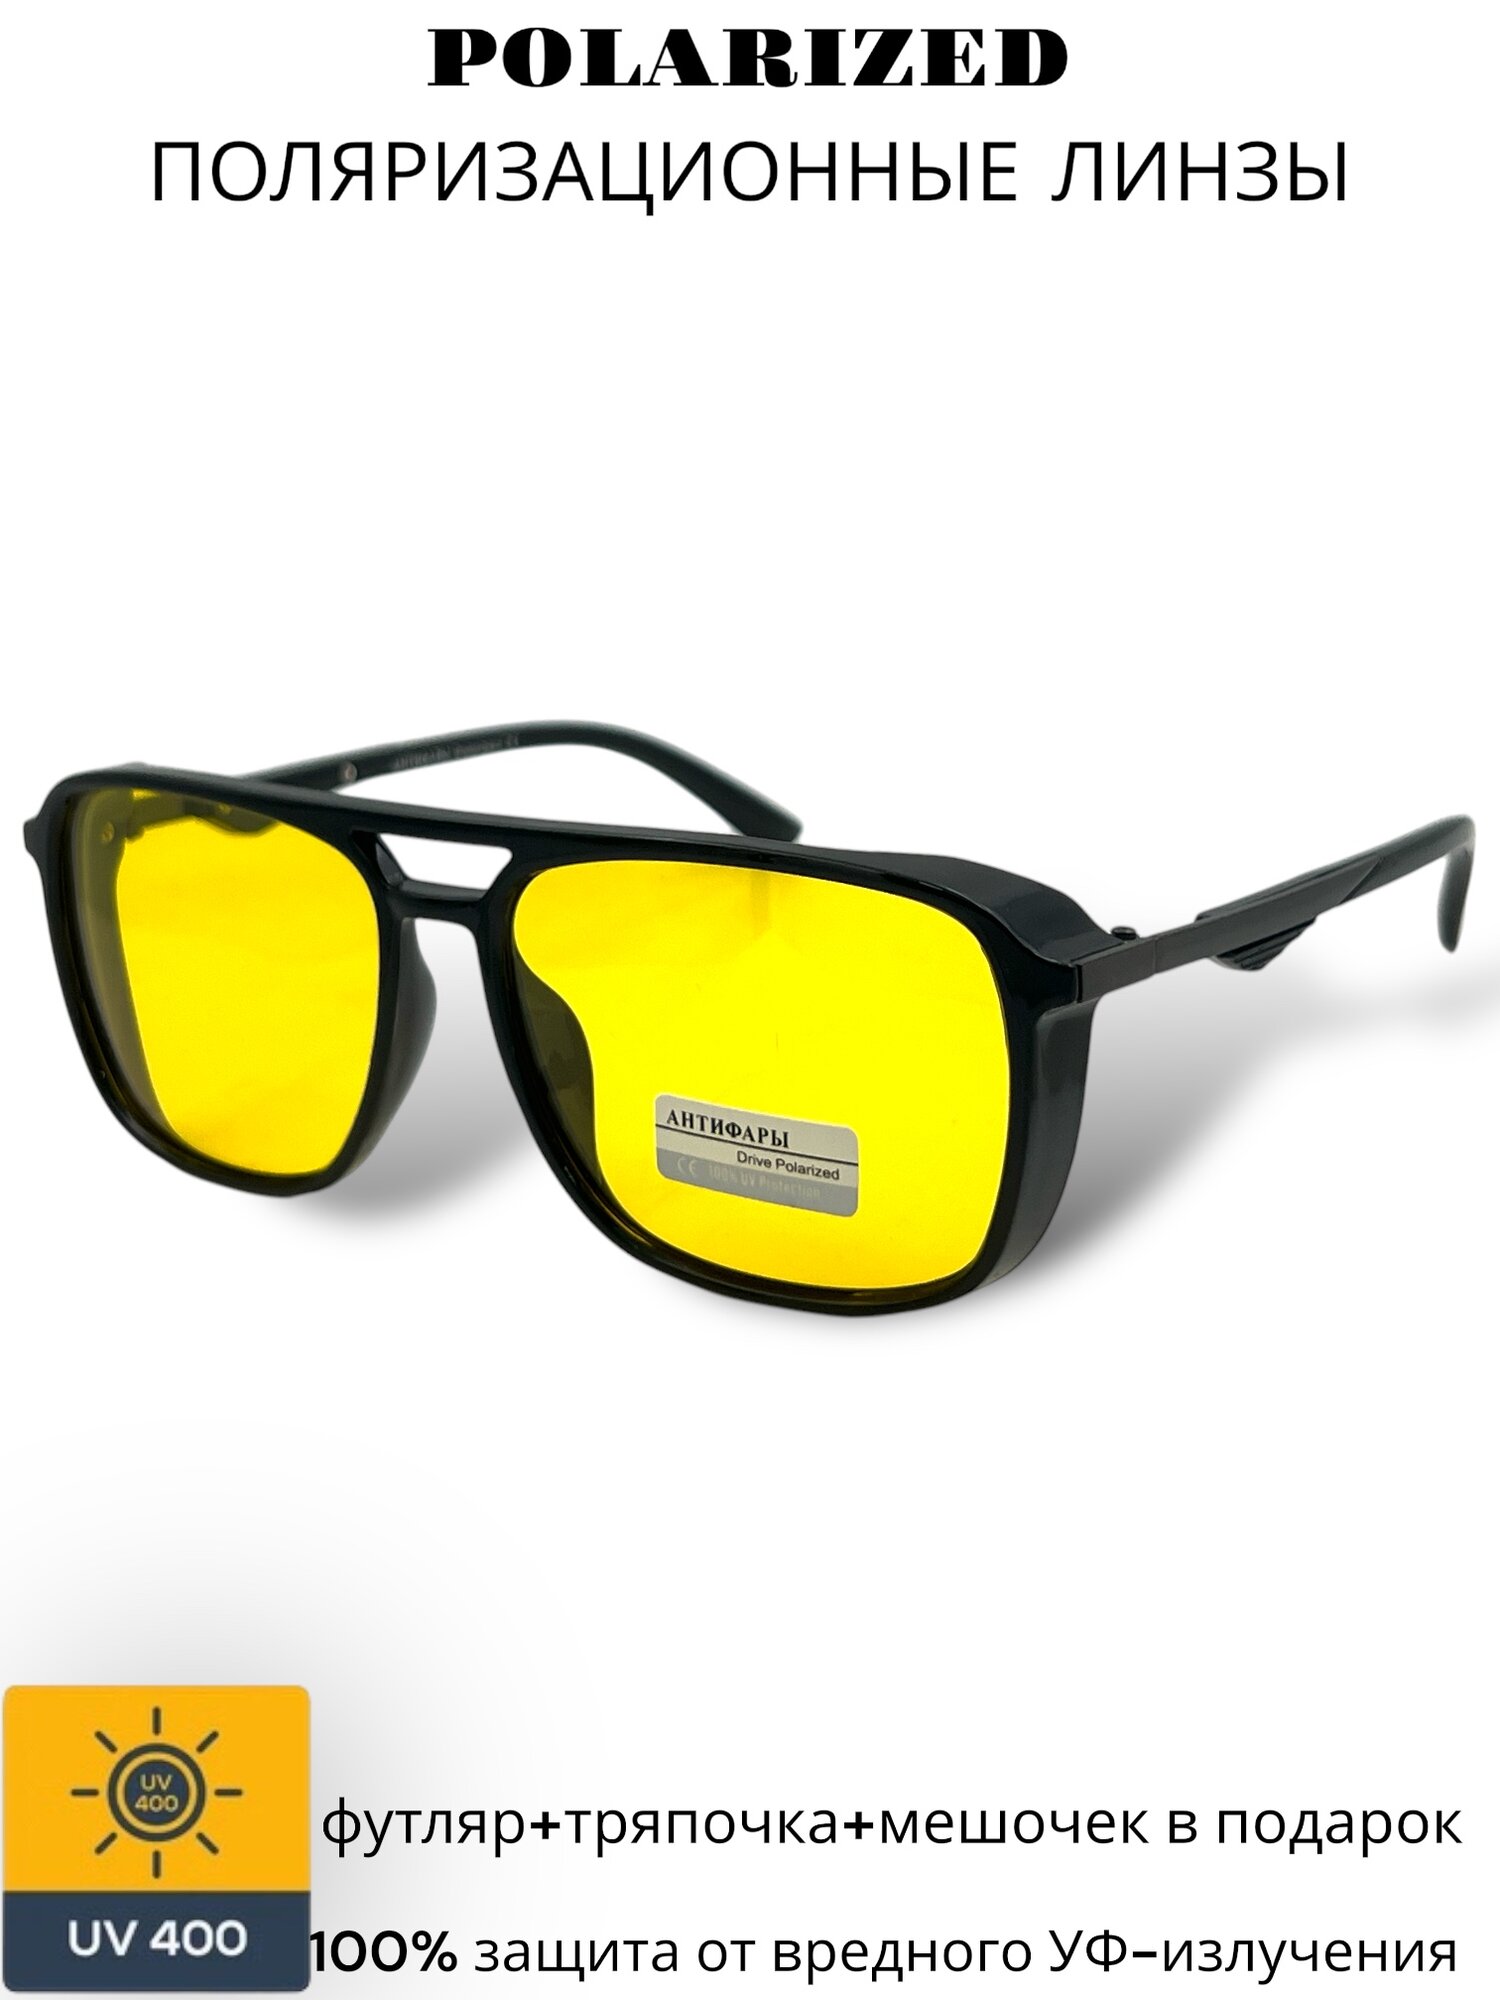 Очки антифары/ очки для вождения с поляризацией и защитой от УФ лучей